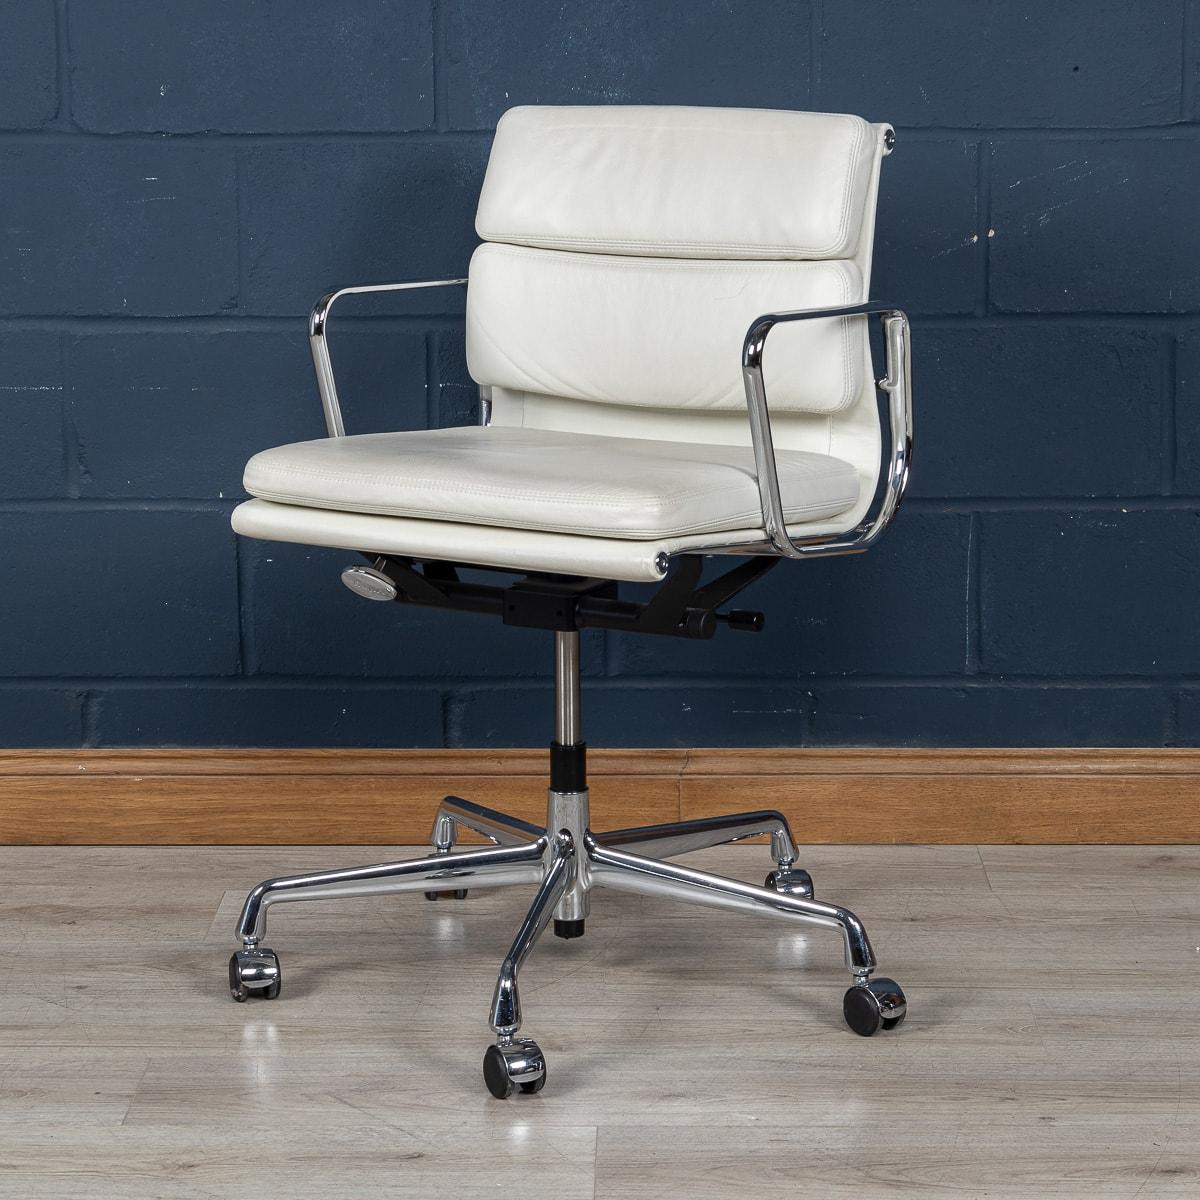 Un magnifique ensemble de quatre chaises Eames de Vitra, de fabrication récente, recouvertes d'un délicieux cuir blanc 